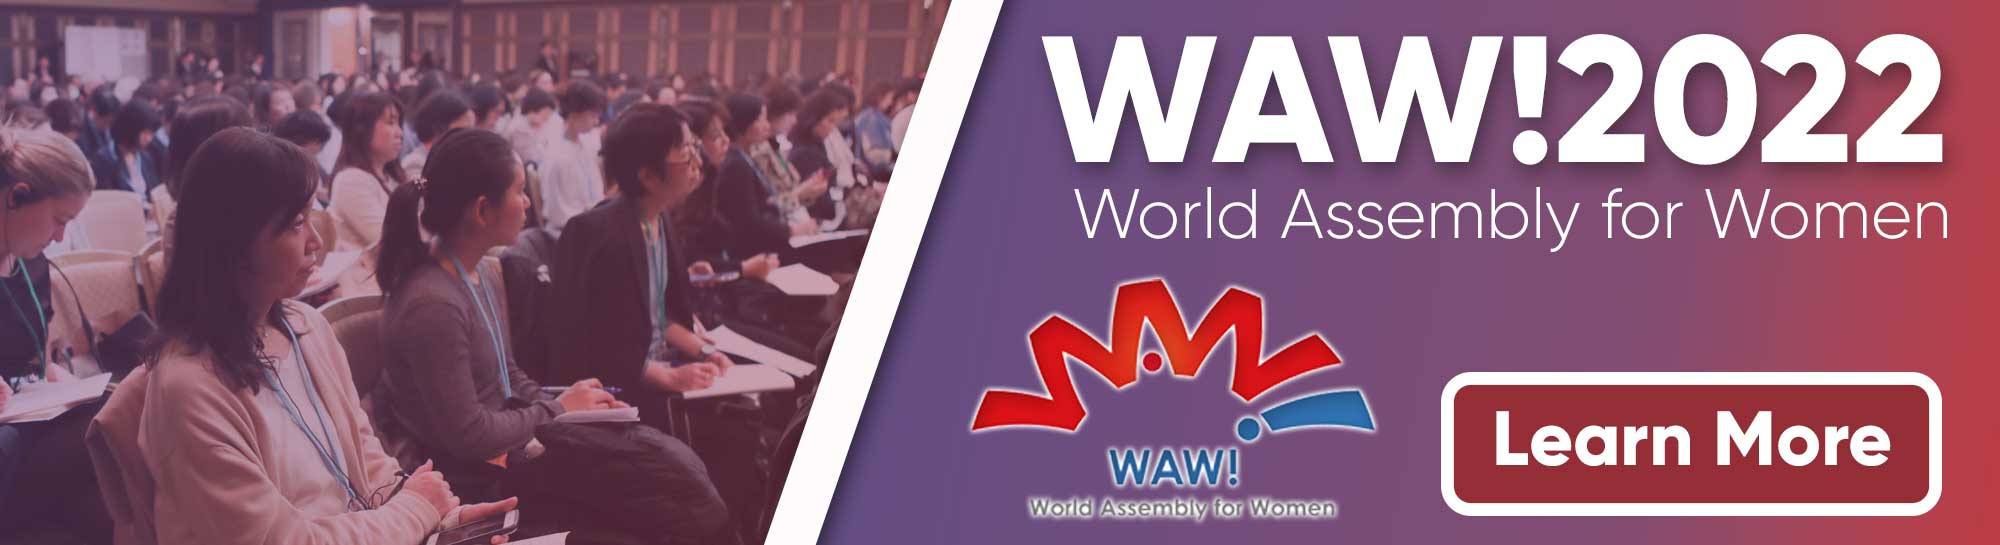 WAW!2022: Il Giappone organizza l'Assemblea mondiale delle donne dopo una pausa di tre anni